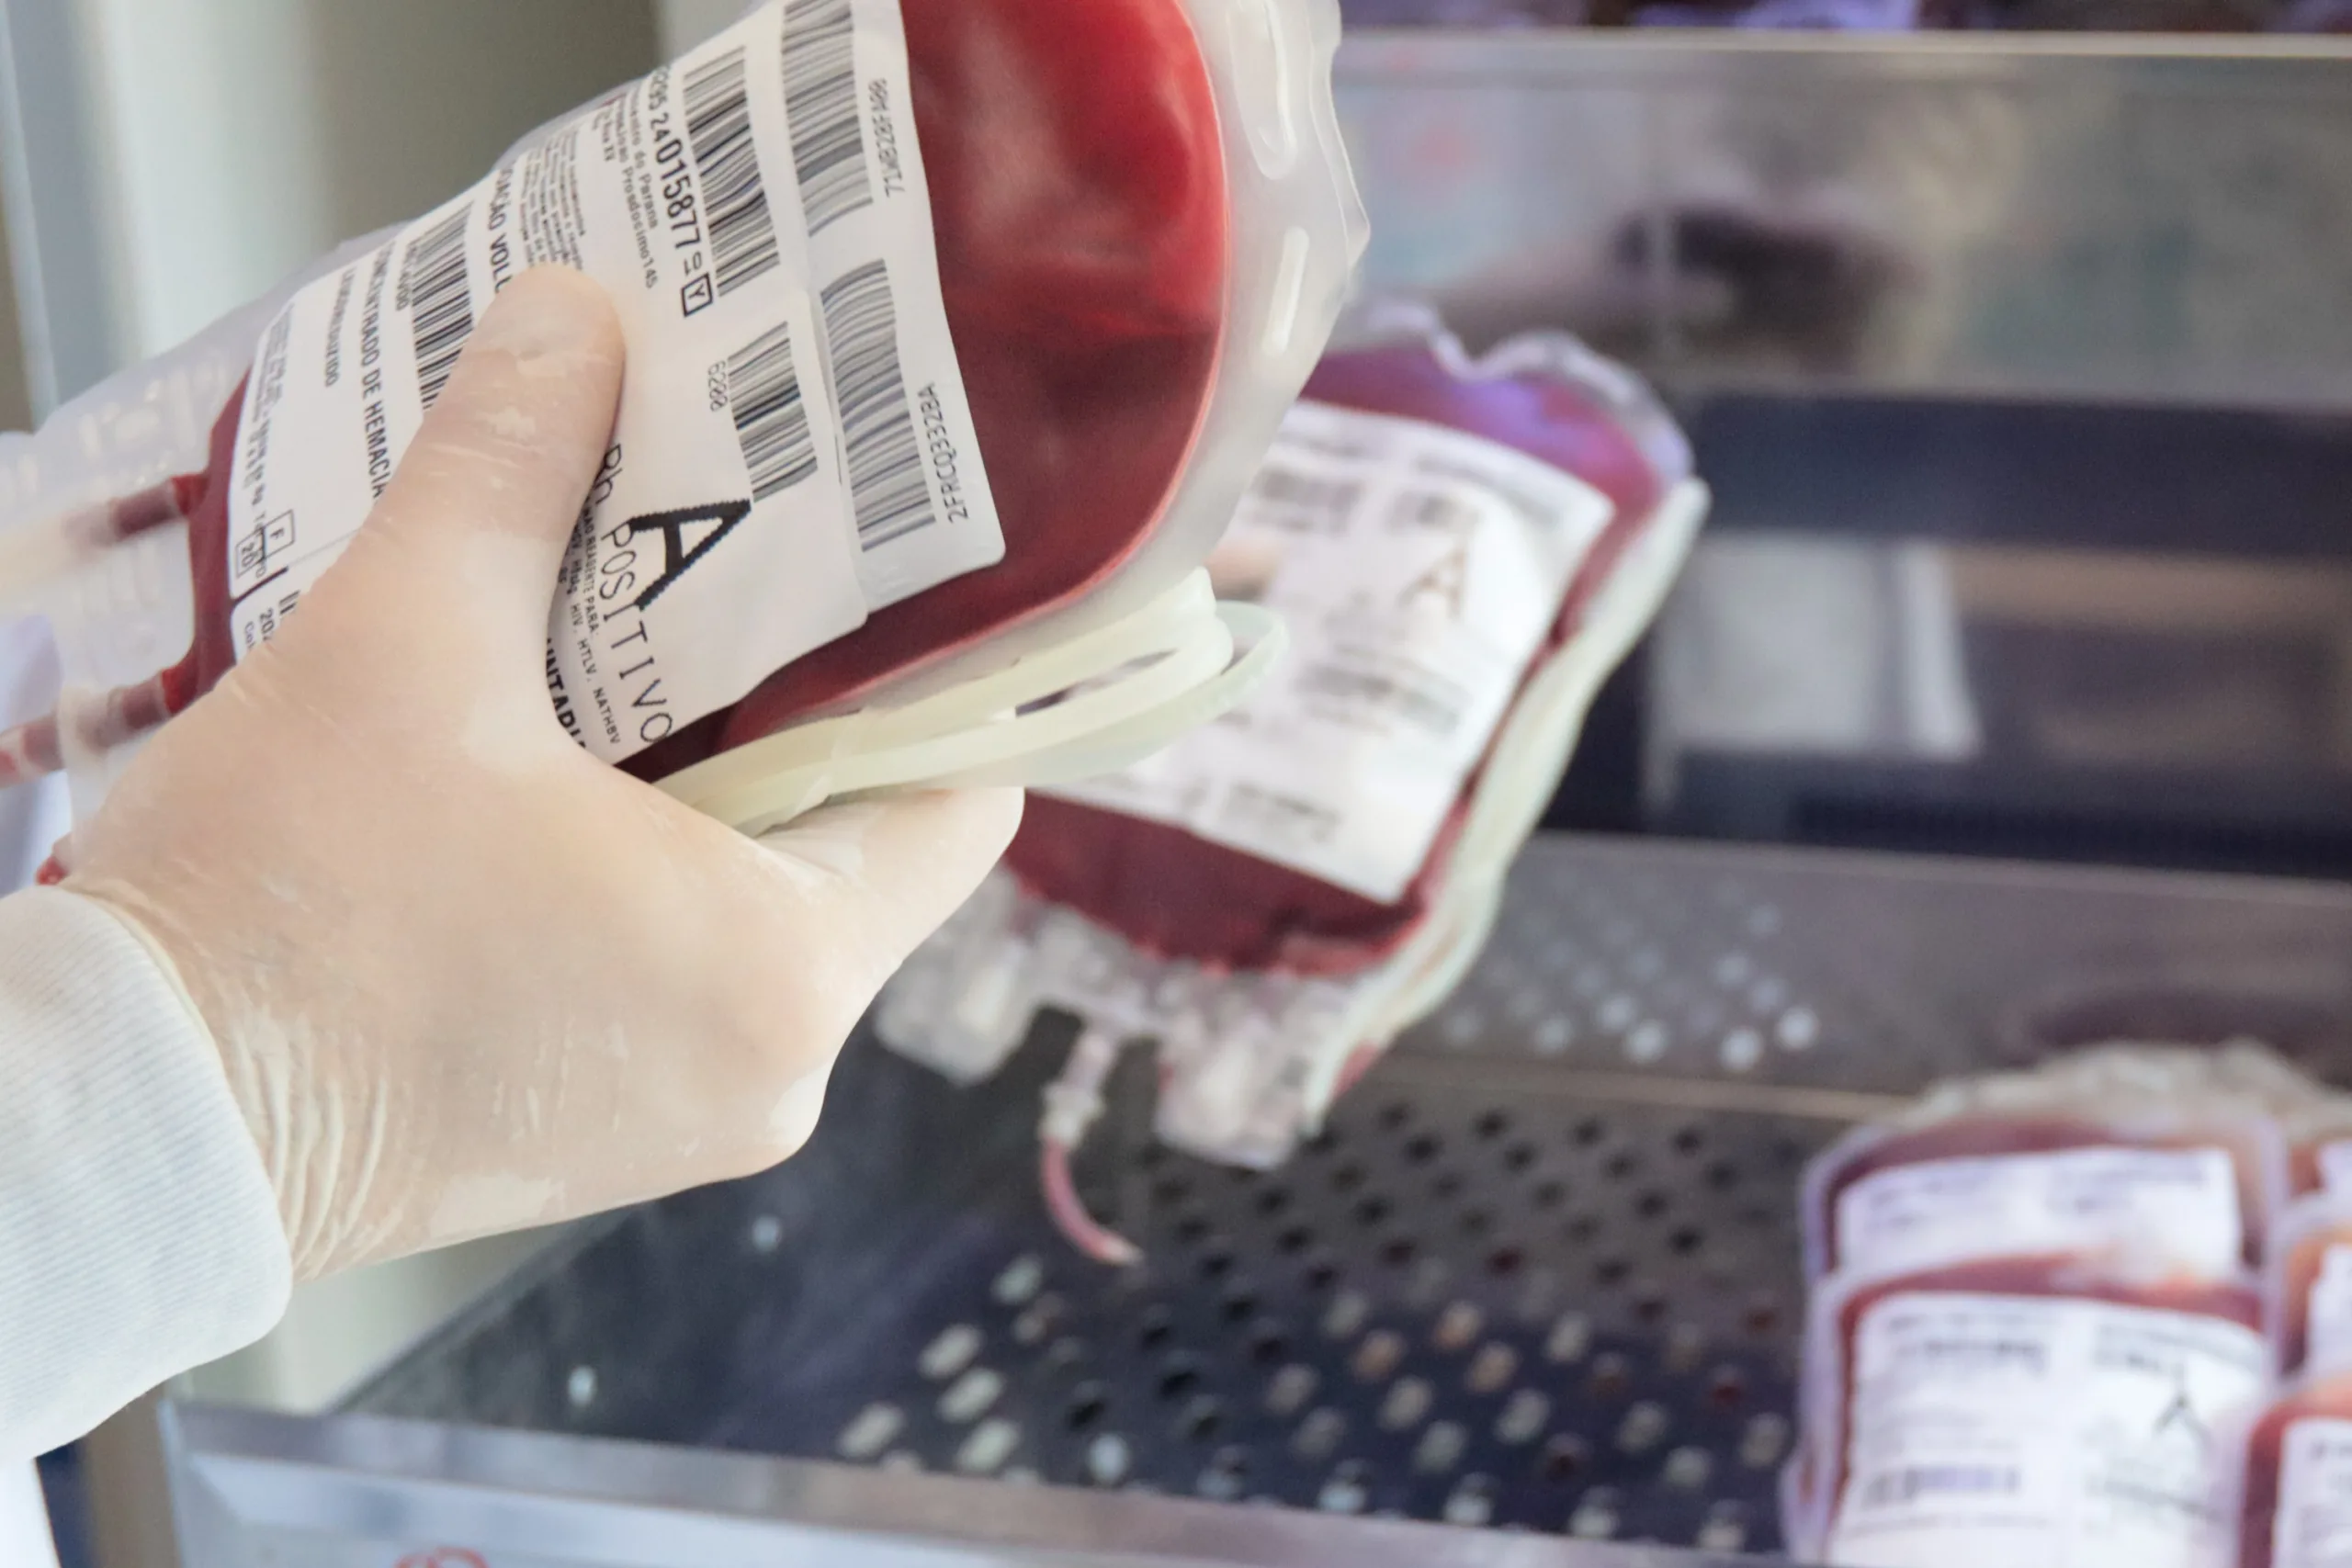 SOS RS | Paraná envia 300 bolsas de sangue para ajudar o sistema de saúde do Rio Grande do Sul